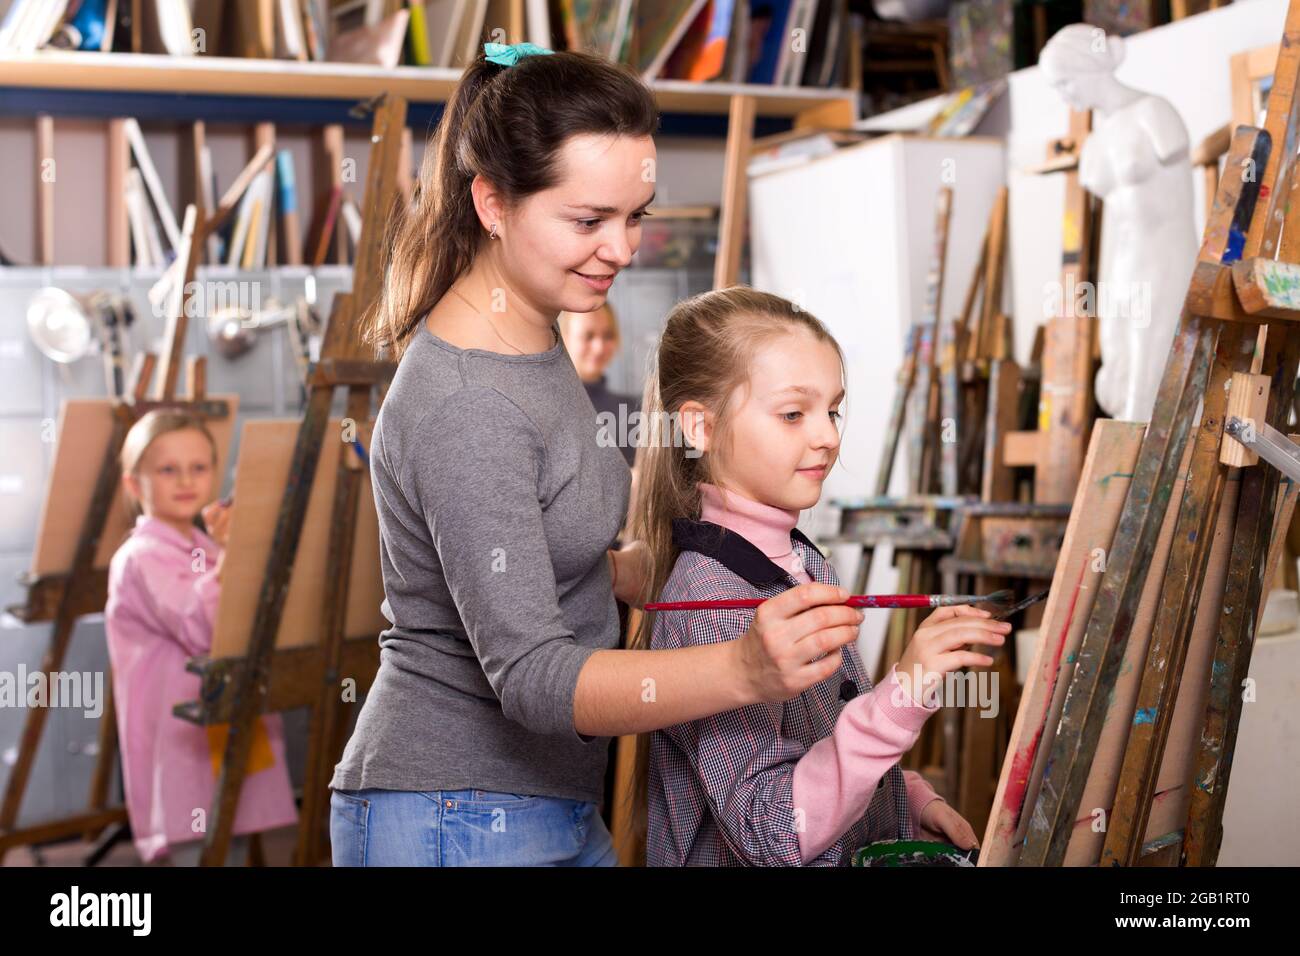 Maestra que ayuda a la niña durante la clase de pintura Foto de stock